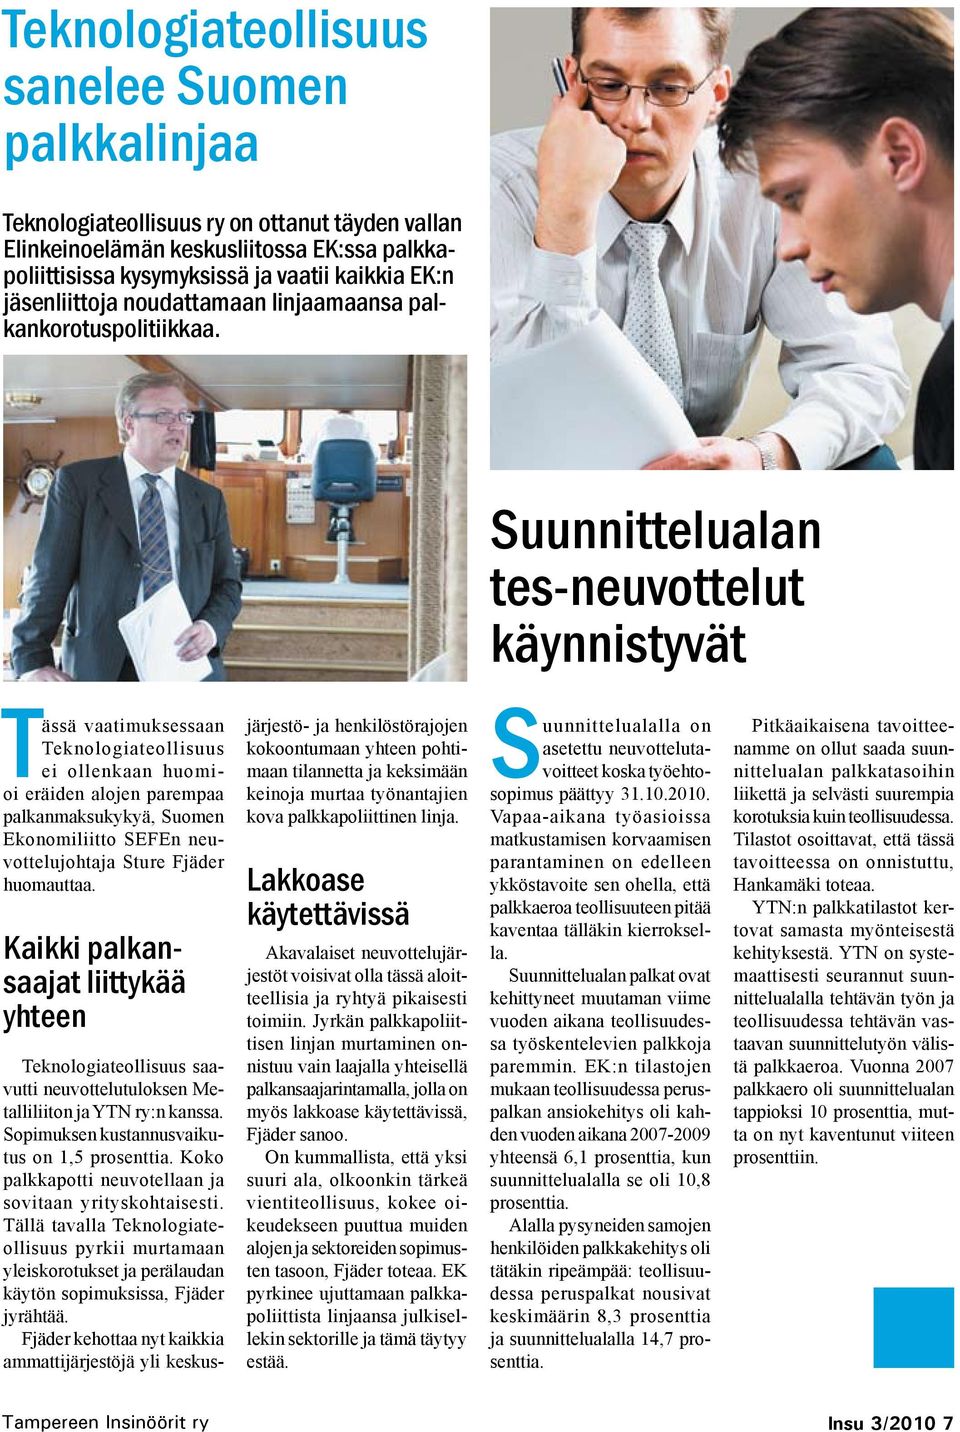 Suunnittelualan tes-neuvottelut käynnistyvät Tässä vaatimuksessaan Teknologiateollisuus ei ollenkaan huomioi eräiden alojen parempaa palkanmaksukykyä, Suomen Ekonomiliitto SEFEn neuvottelujohtaja